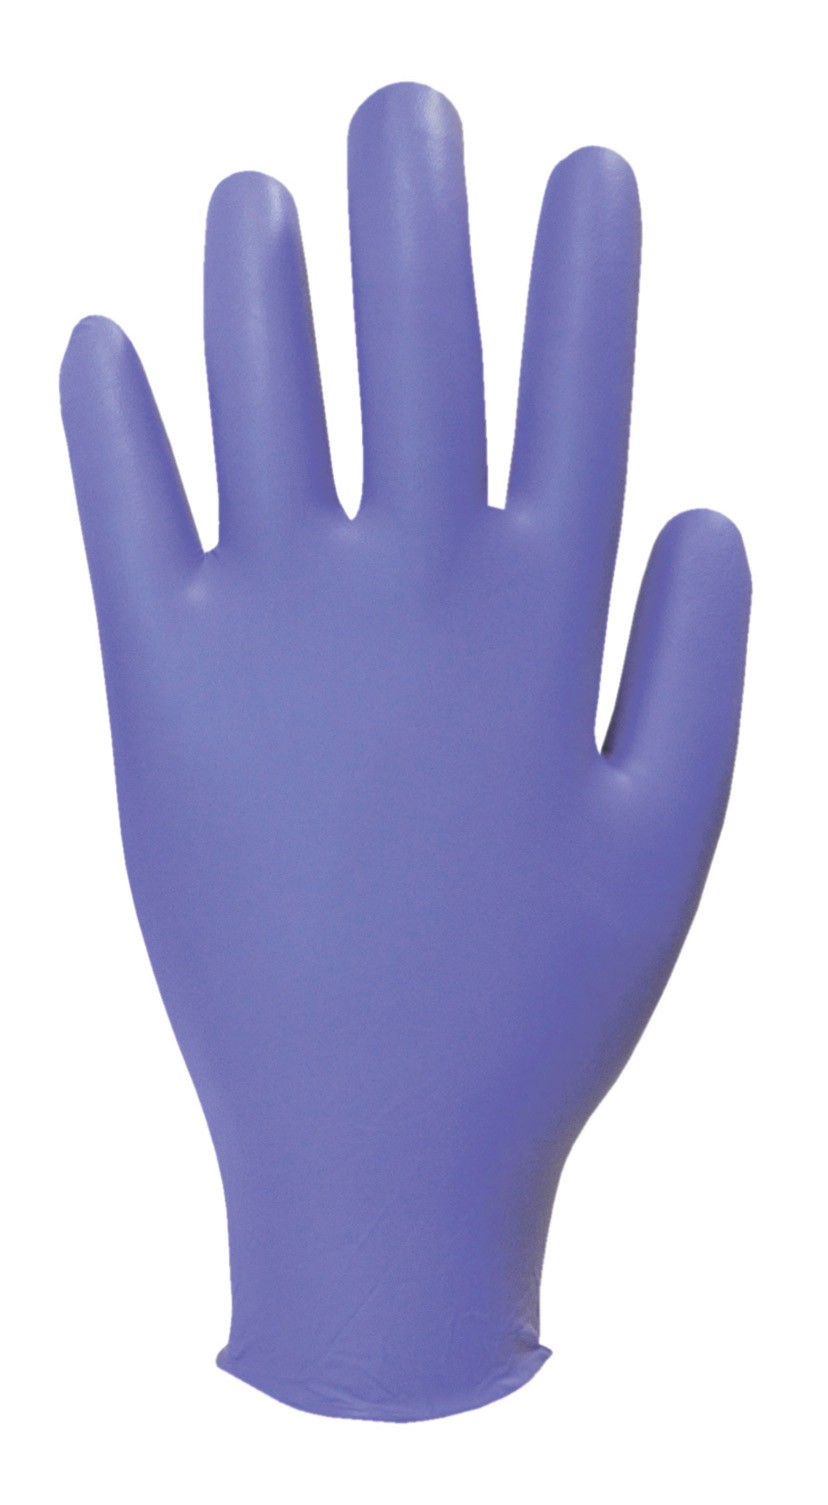 gant nitrile violet sans latex